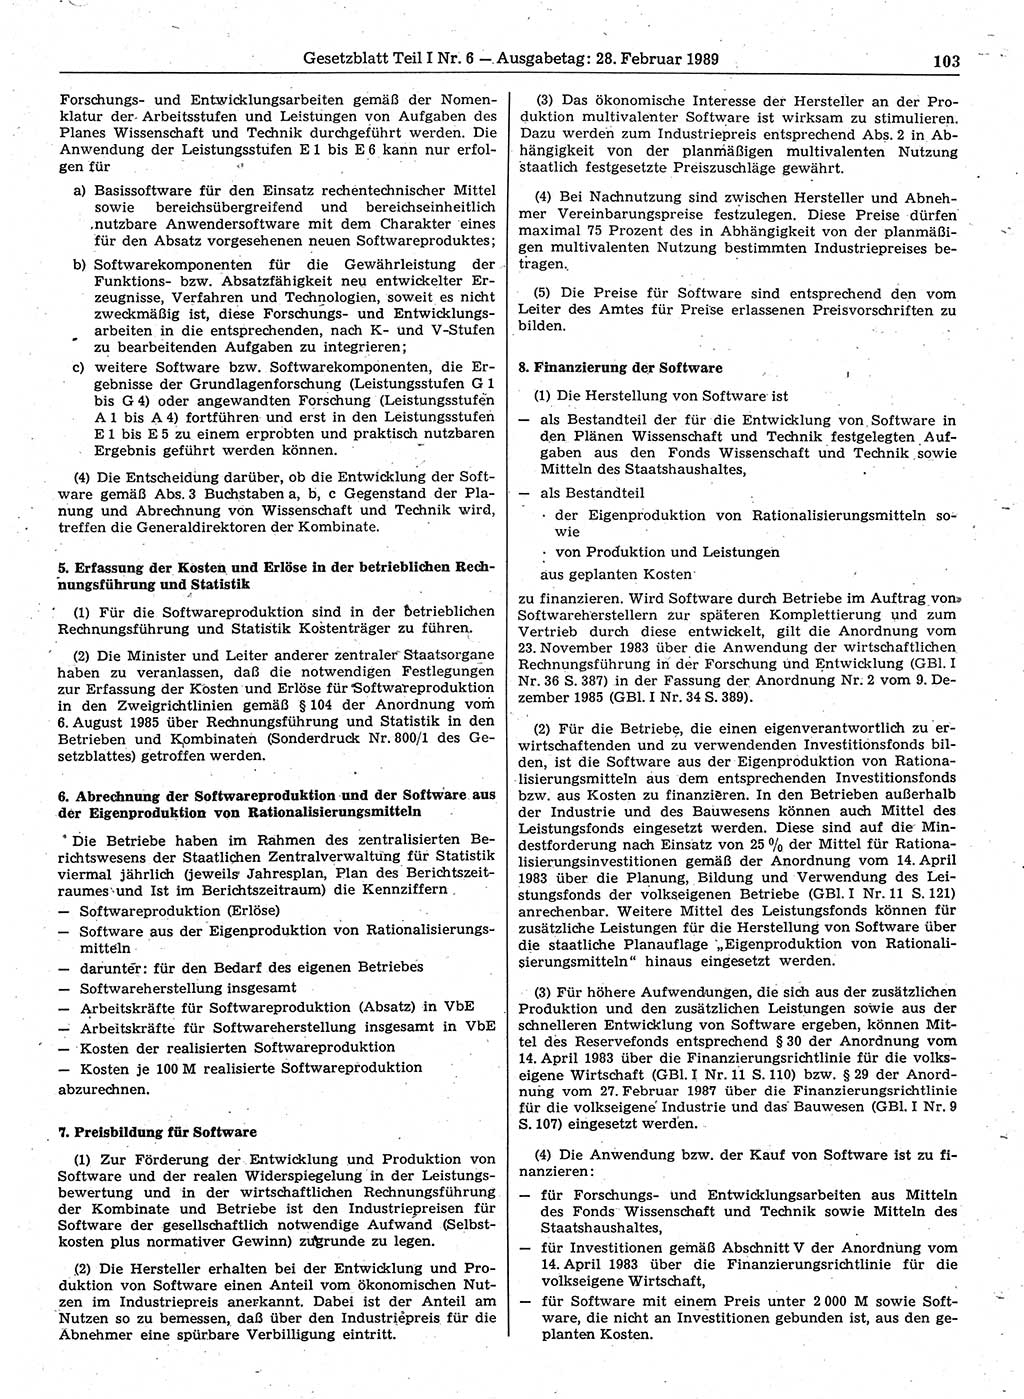 Gesetzblatt (GBl.) der Deutschen Demokratischen Republik (DDR) Teil Ⅰ 1989, Seite 103 (GBl. DDR Ⅰ 1989, S. 103)